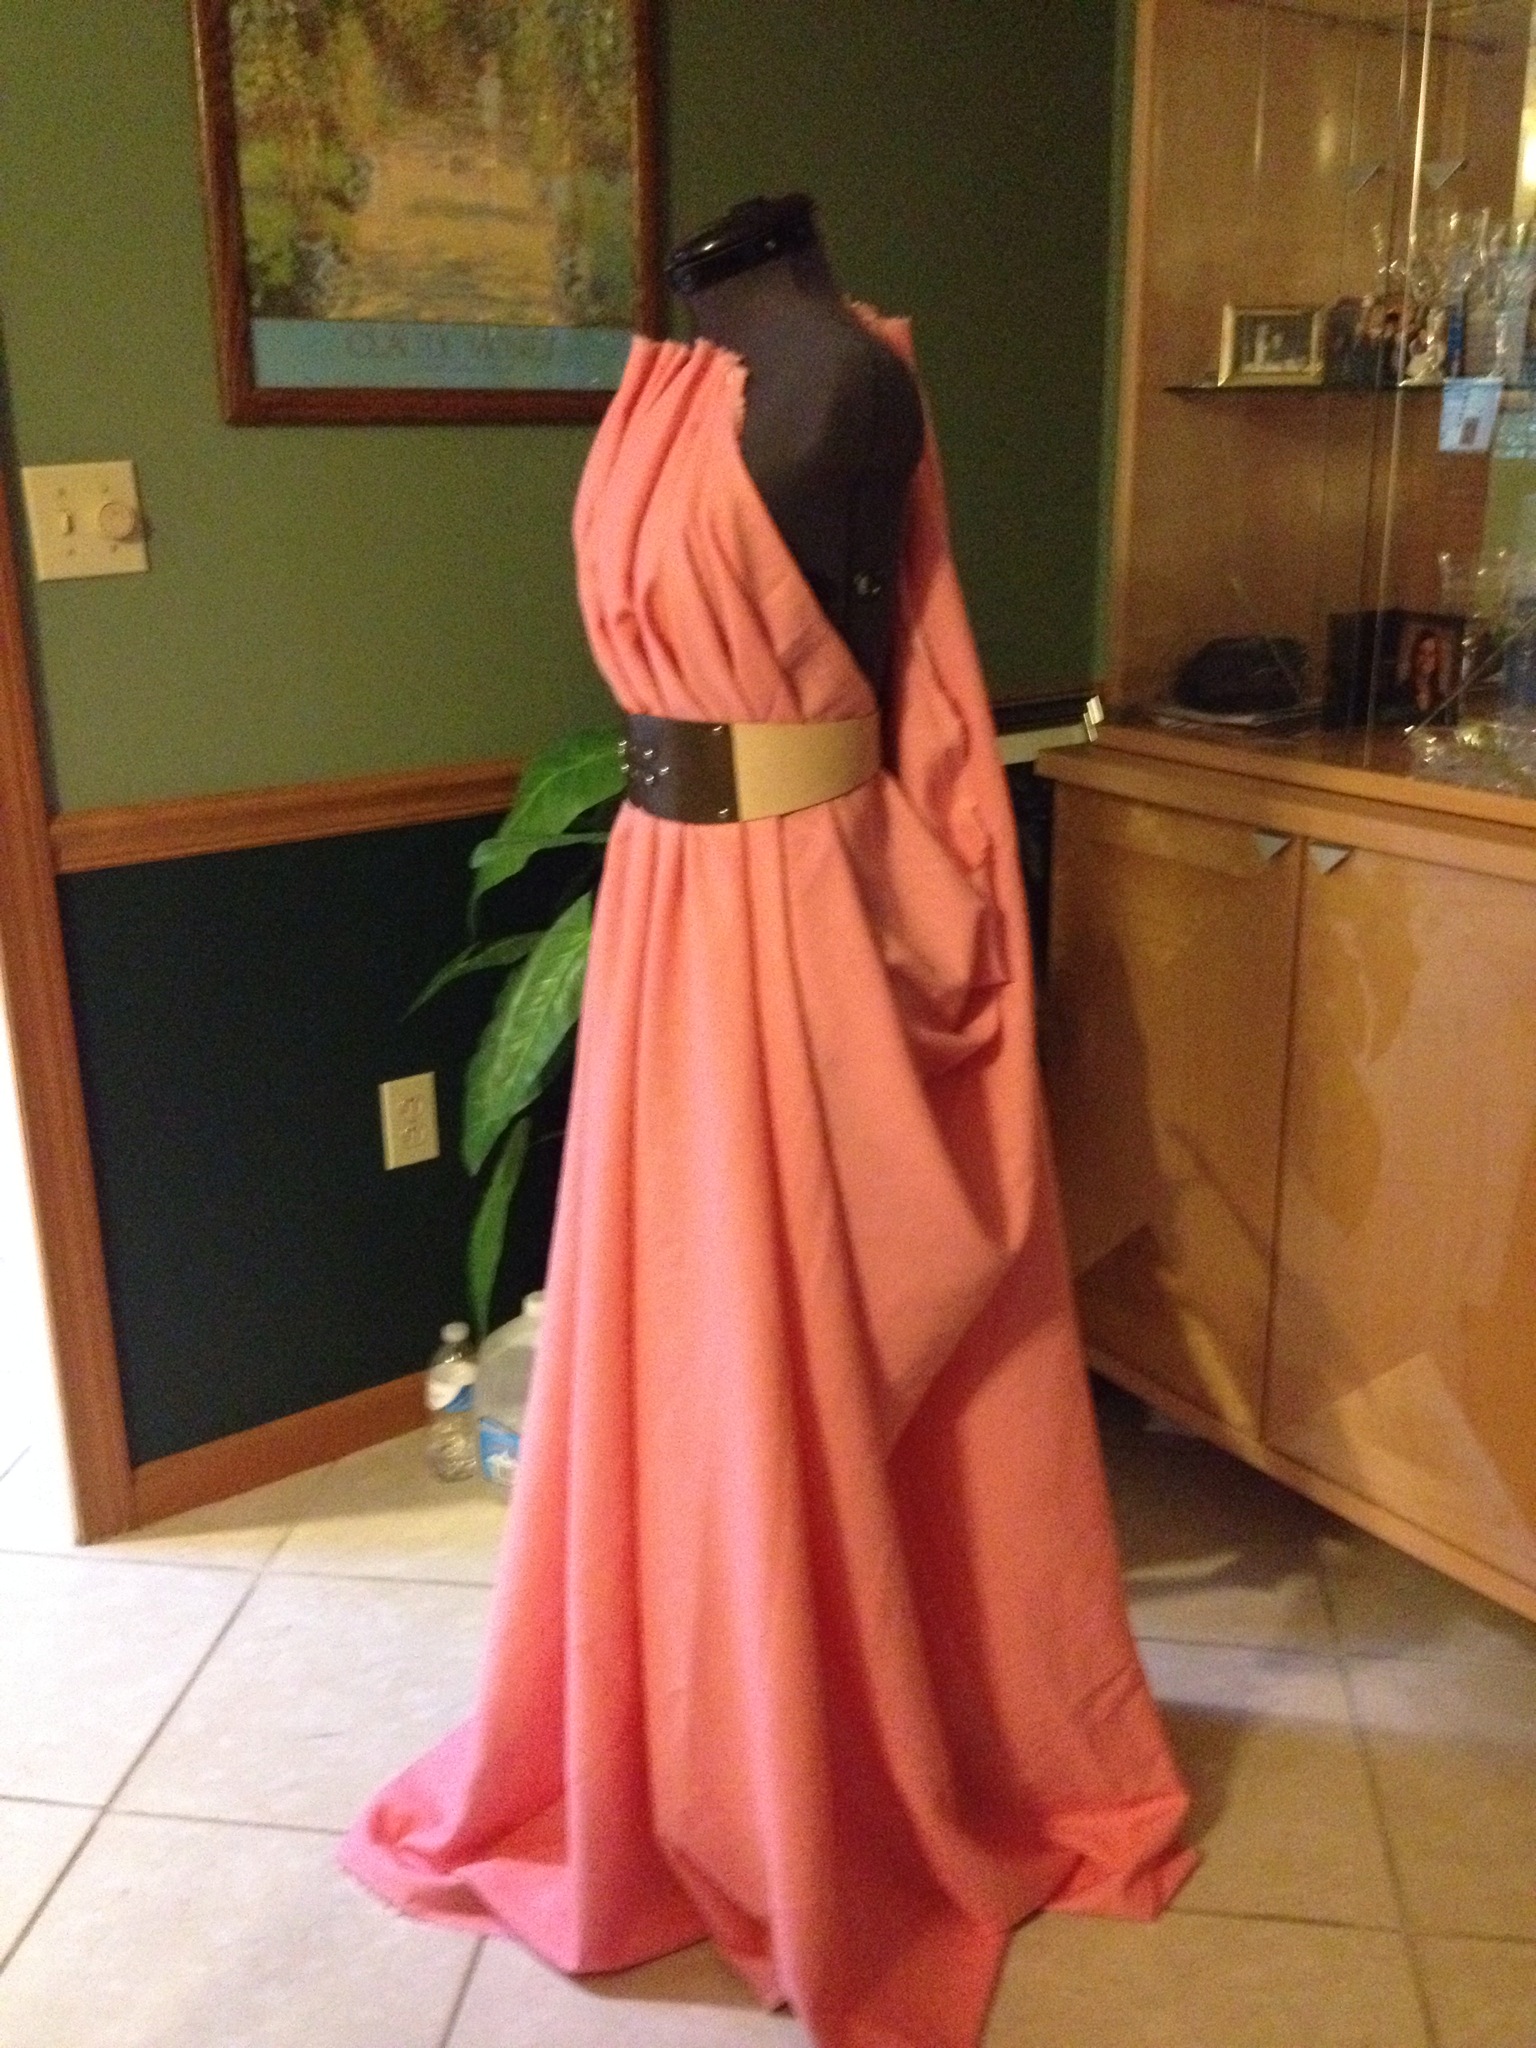 Bạn đang tìm kiếm trang phục để tự tin diện trong các dịp đặc biệt? Bạn sẽ không thể bỏ lỡ bức hình về Handmaiden Dress. Sự sang trọng, thanh lịch và độc đáo của chiếc váy chắc chắn sẽ khiến bạn hài lòng.